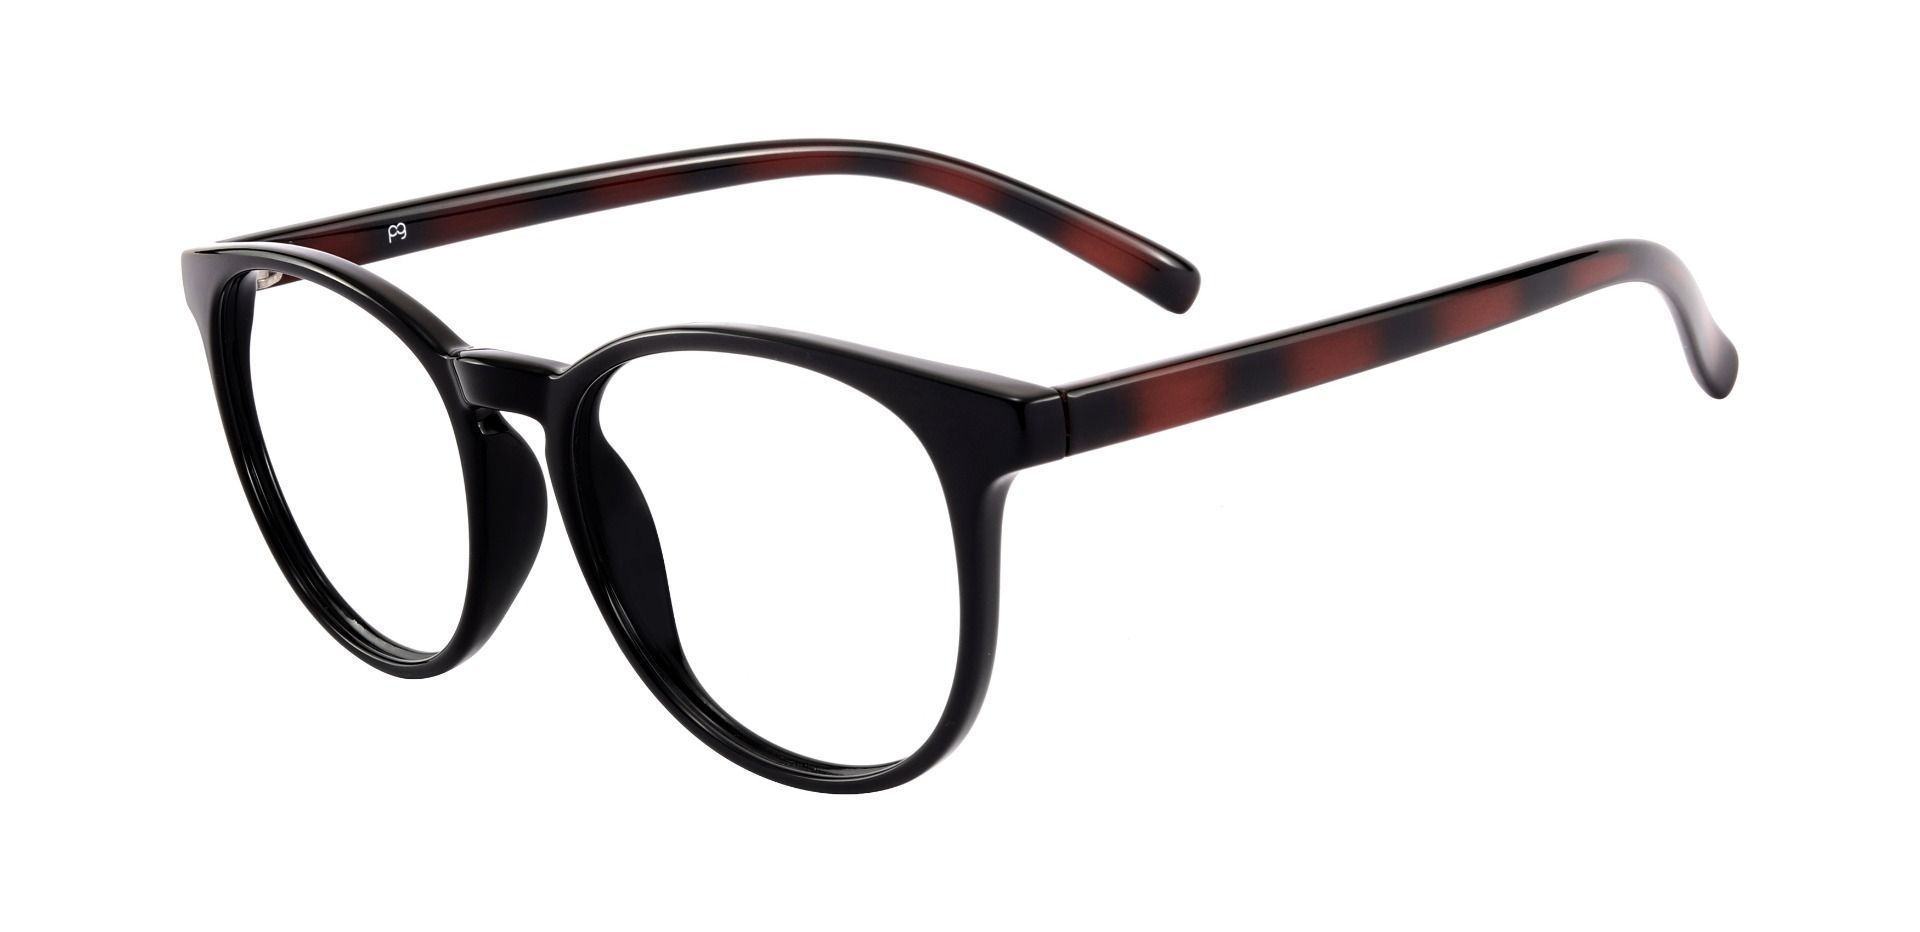 Corbett Oval Reading Glasses - Black